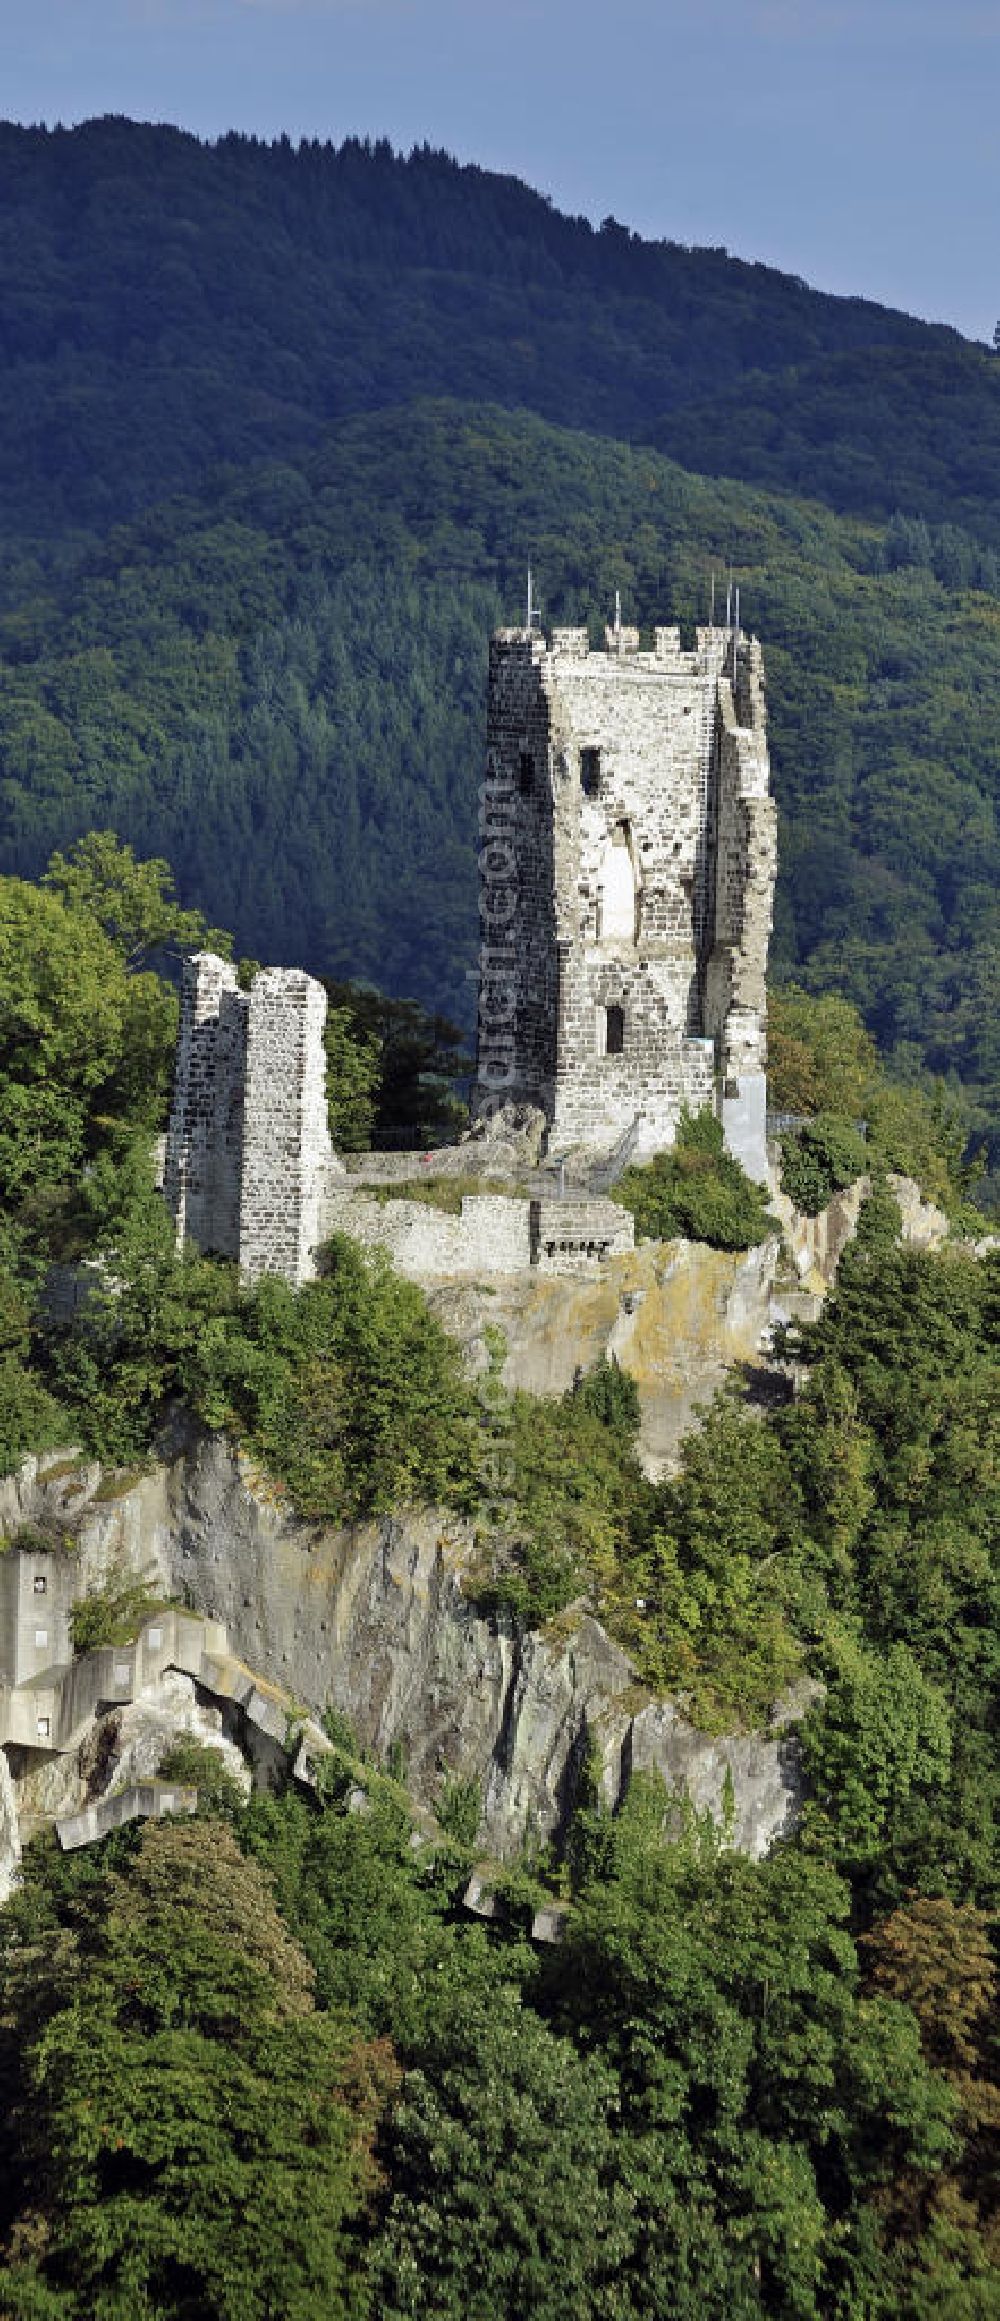 Königswinter from above - Blick auf die Burgruine Drachenfels im Siebengebirge. Die Burg wurde im 12. Jahrhundert gebaut und befindet sich auf dem Berg Drachenfels. View of the ruins of the Castle Drachenfels in the Siebengebirge. The castle was built in the 12th Century and is located on Mount Drachenfels.